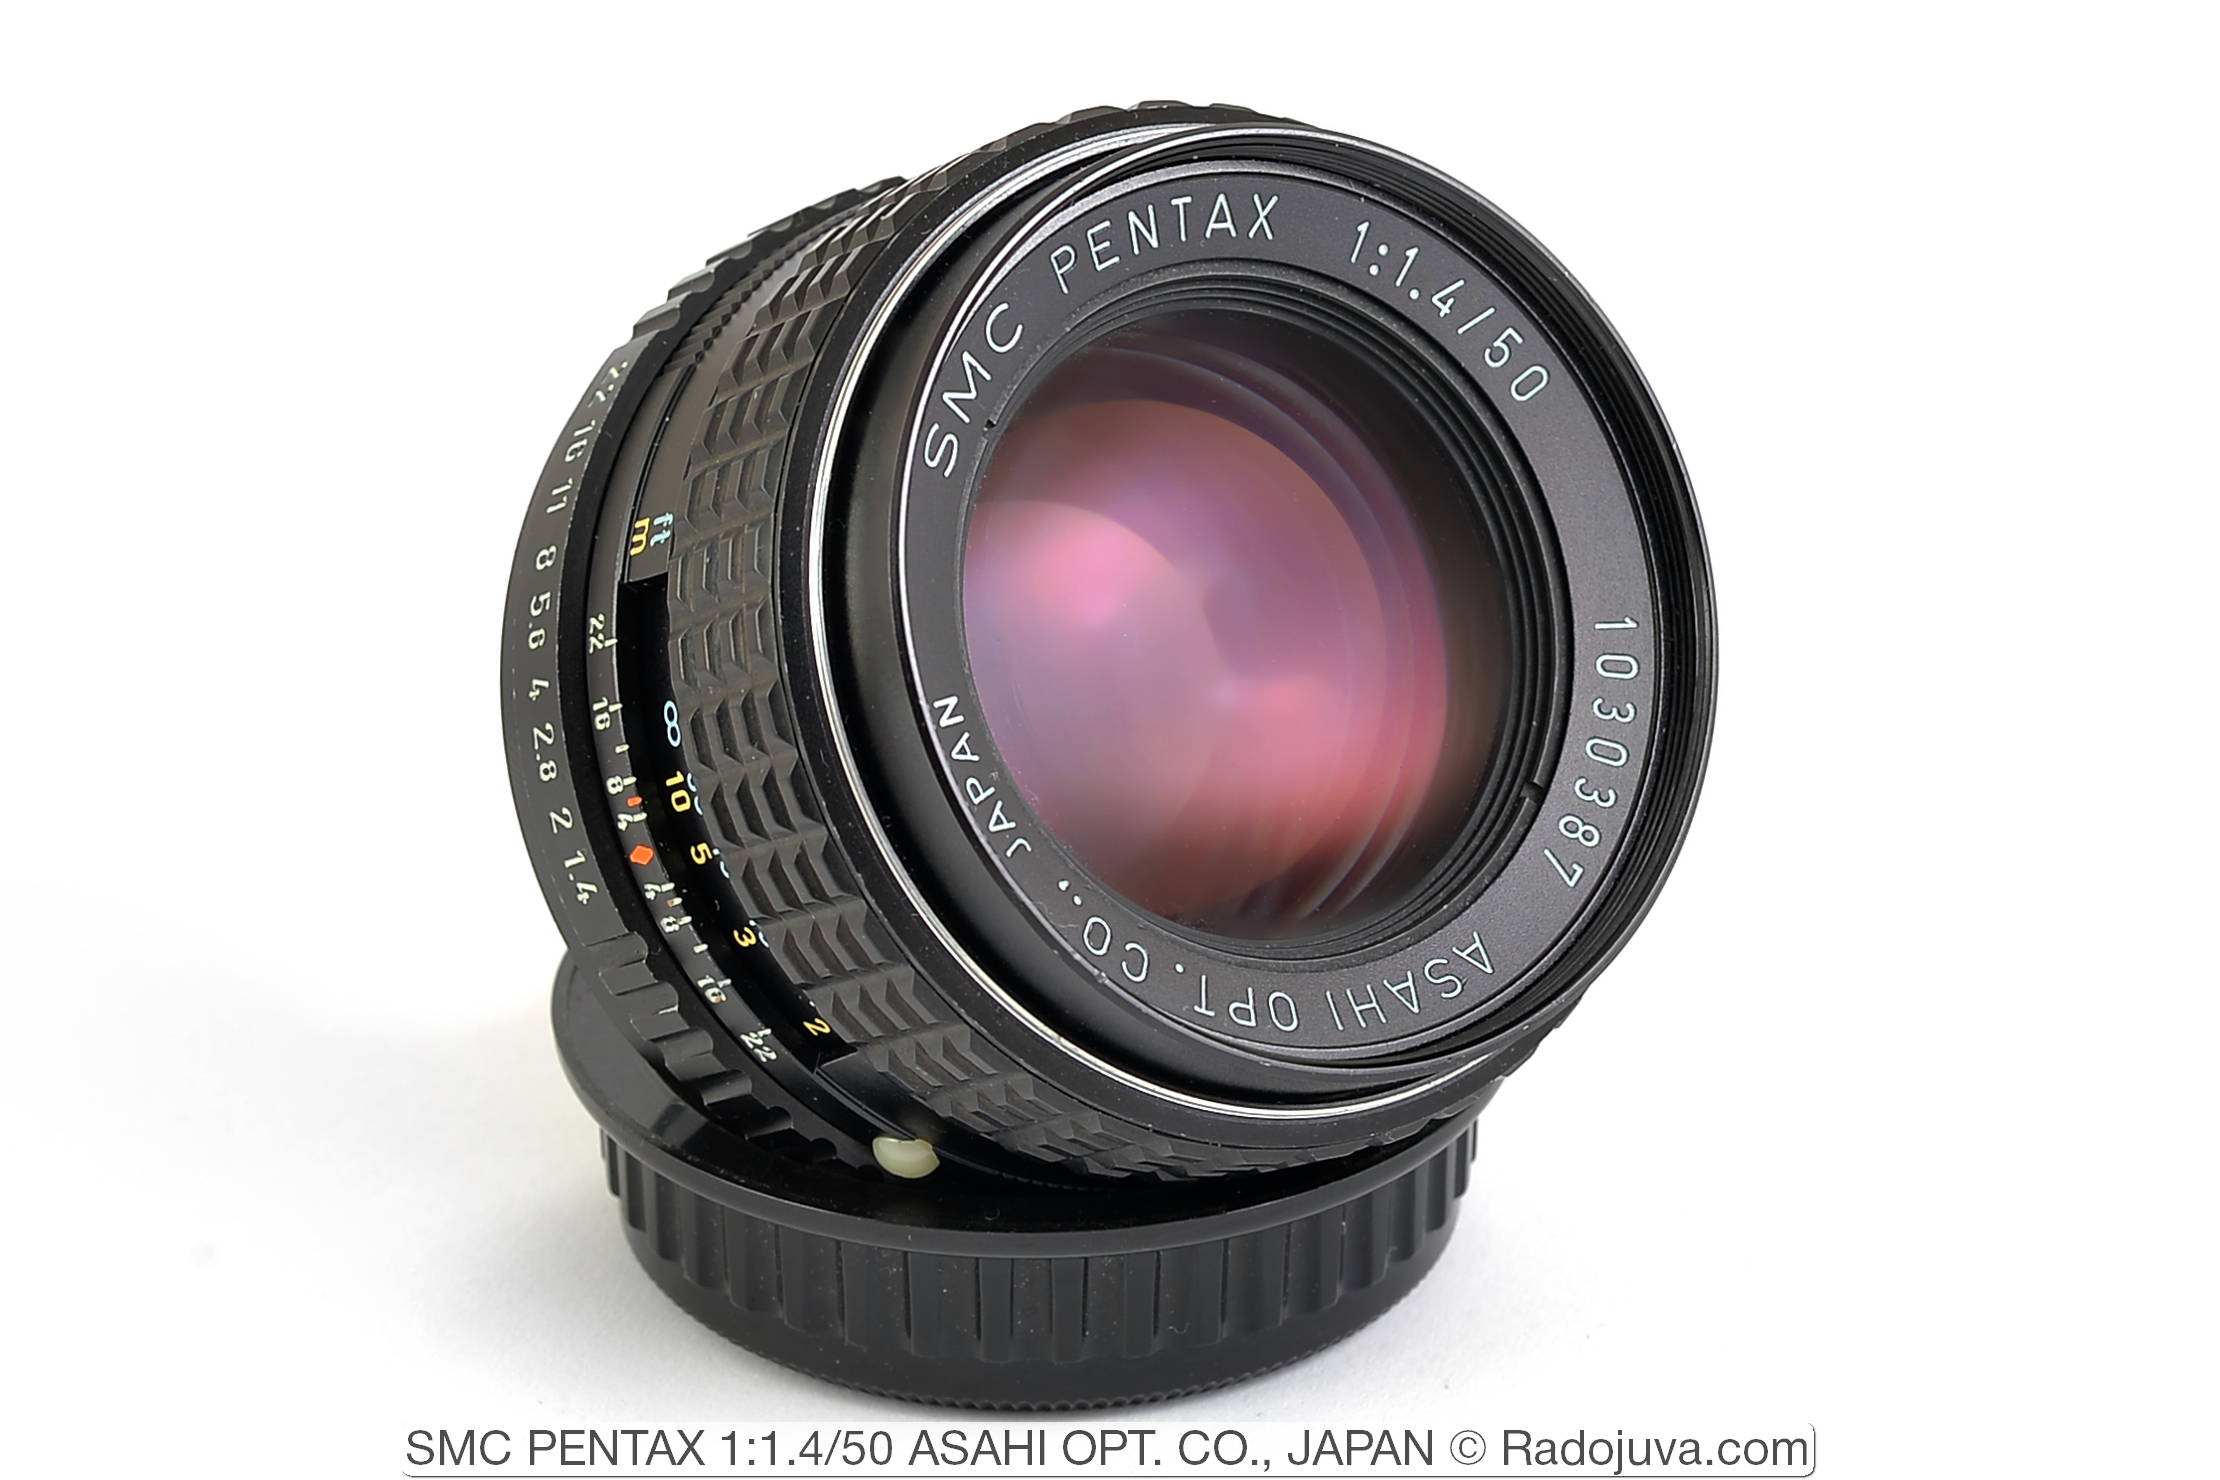 SMC PENTAX 1: 1.4 / 50 ASAHI OPT. CO., JAPAN